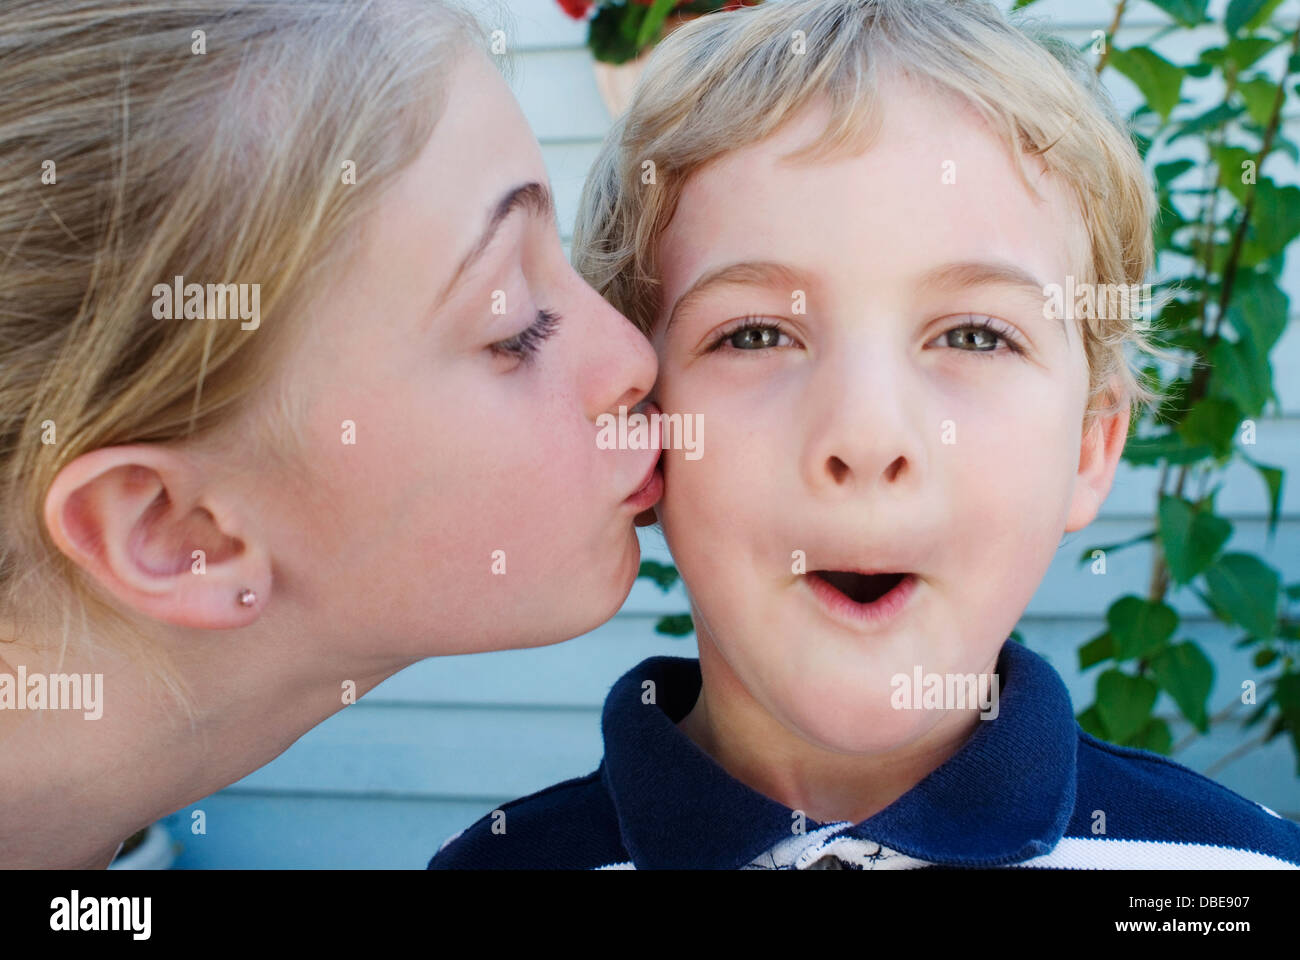 Ein junges Mädchen einen jüngeren Jungen auf die Wange küssen. Stockfoto